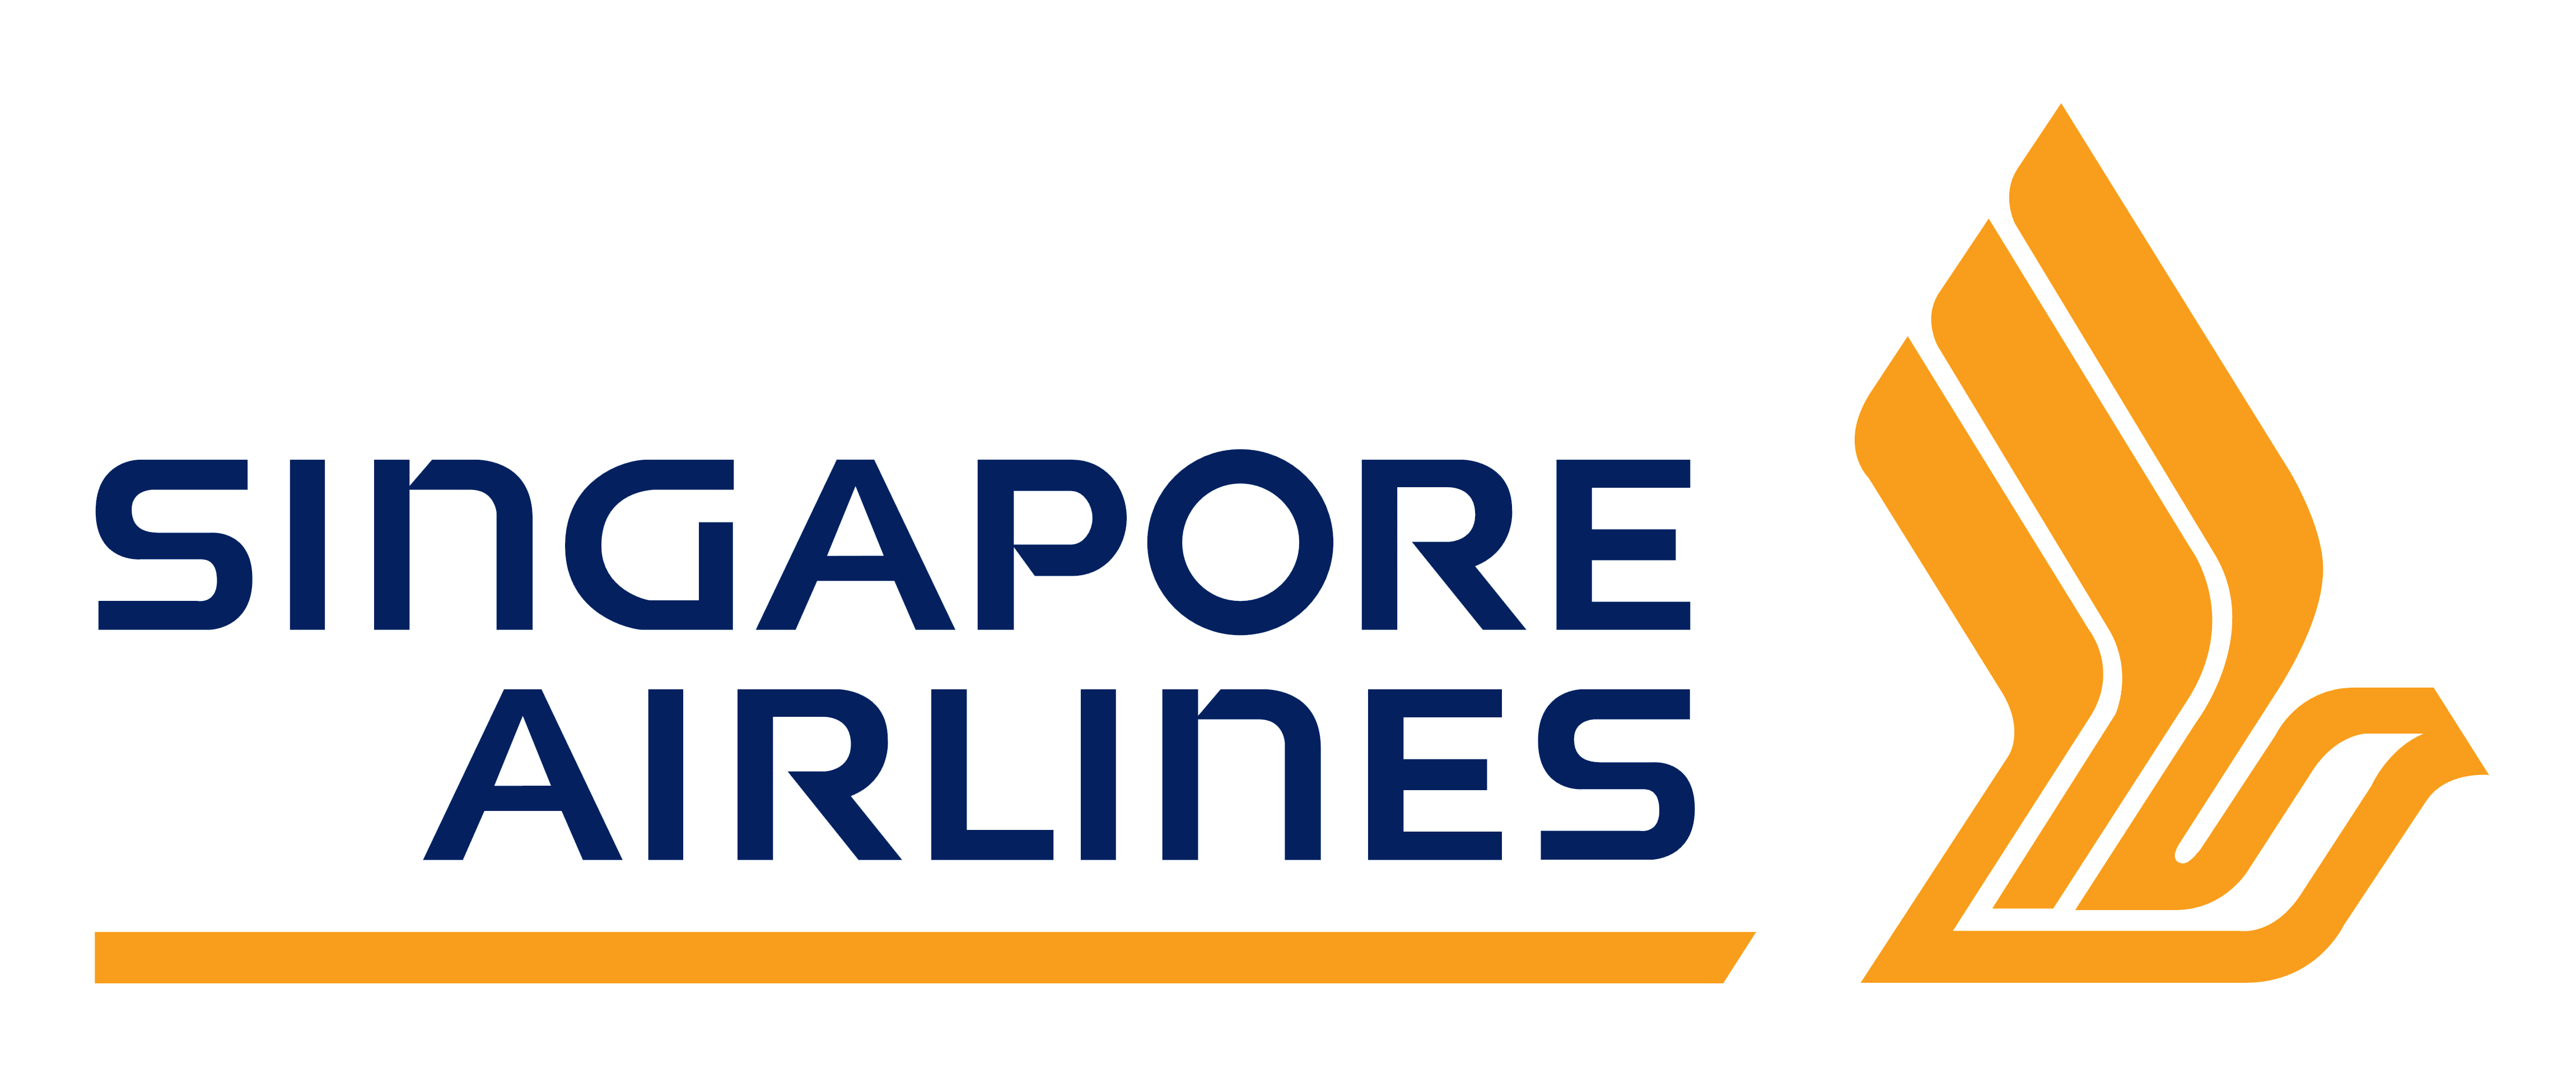 Singapur Airlines